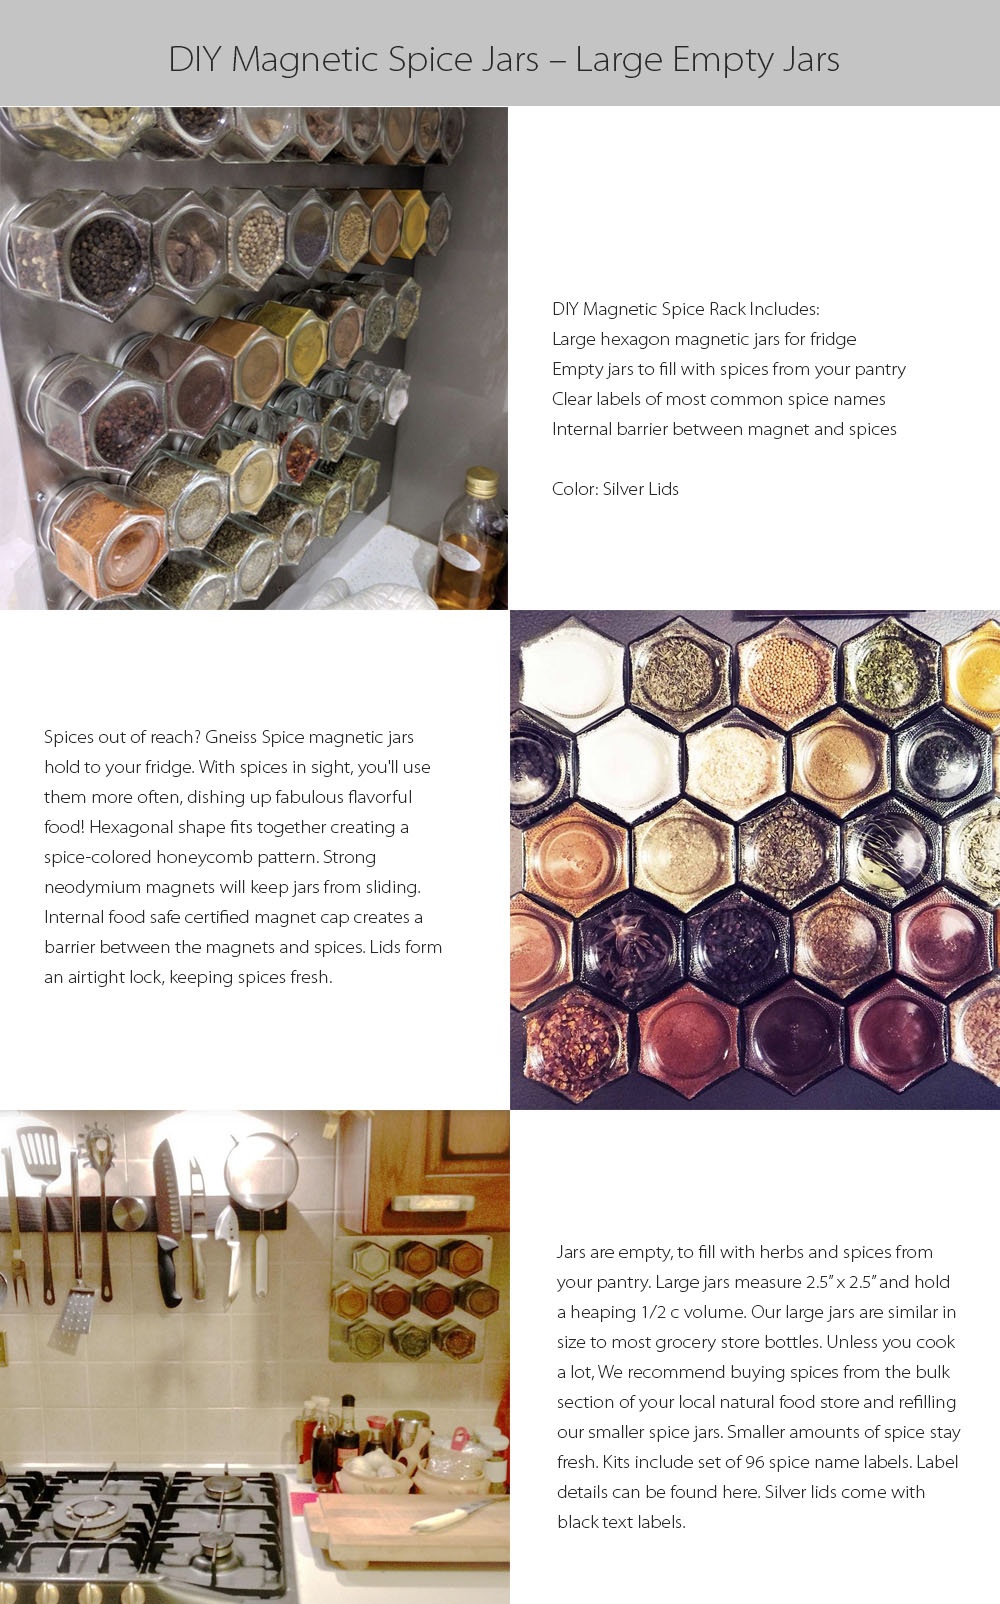 https://rs.apolloboxassets.com/images/sku1984-DIY-Magnetic-Spice-Jars-Large-Empty-Jars/detail-1.jpg